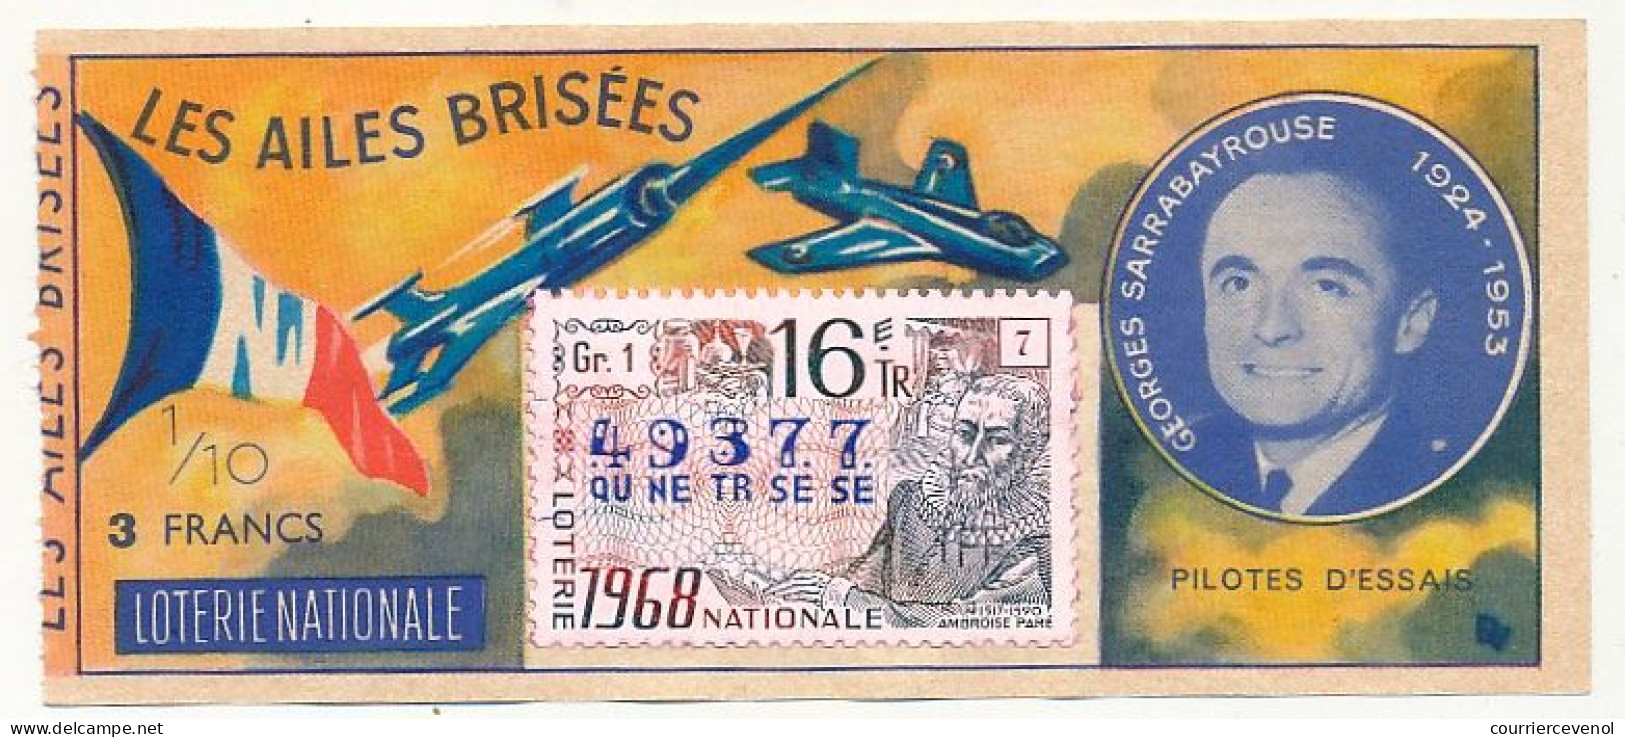 FRANCE - Loterie Nationale - 1/10ème - Les Ailes Brisées - Pilotes D'essais - Georges Sarrabayrouse - 16èm Tr 1968 - Loterijbiljetten